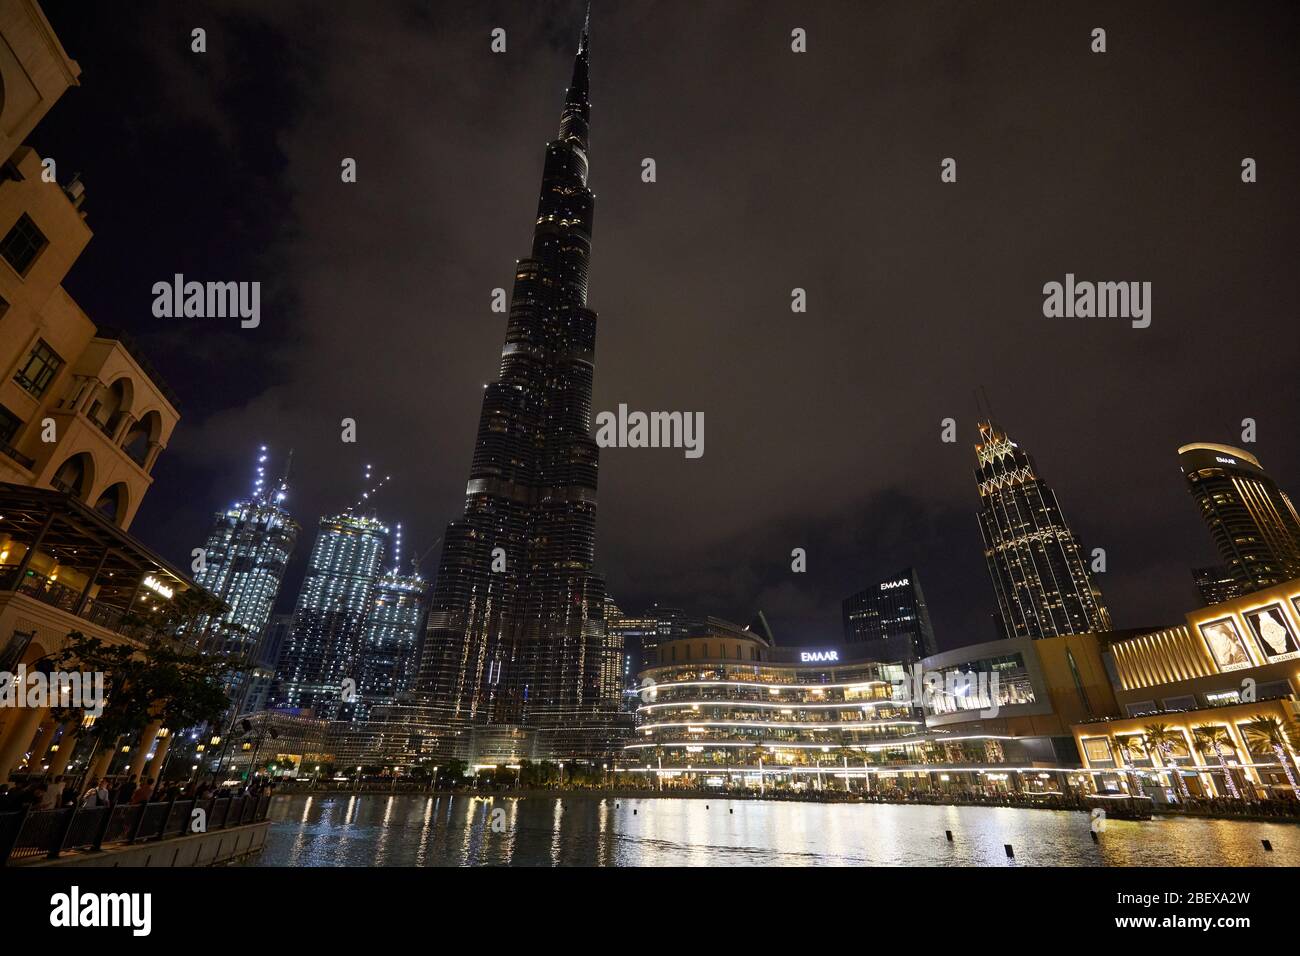 DUBAI, VEREINIGTE ARABISCHE EMIRATE - 21. NOVEMBER 2019: Burj Khalifa Wolkenkratzer und Dubai Mall beleuchtet bei Nacht mit Menschen Stockfoto